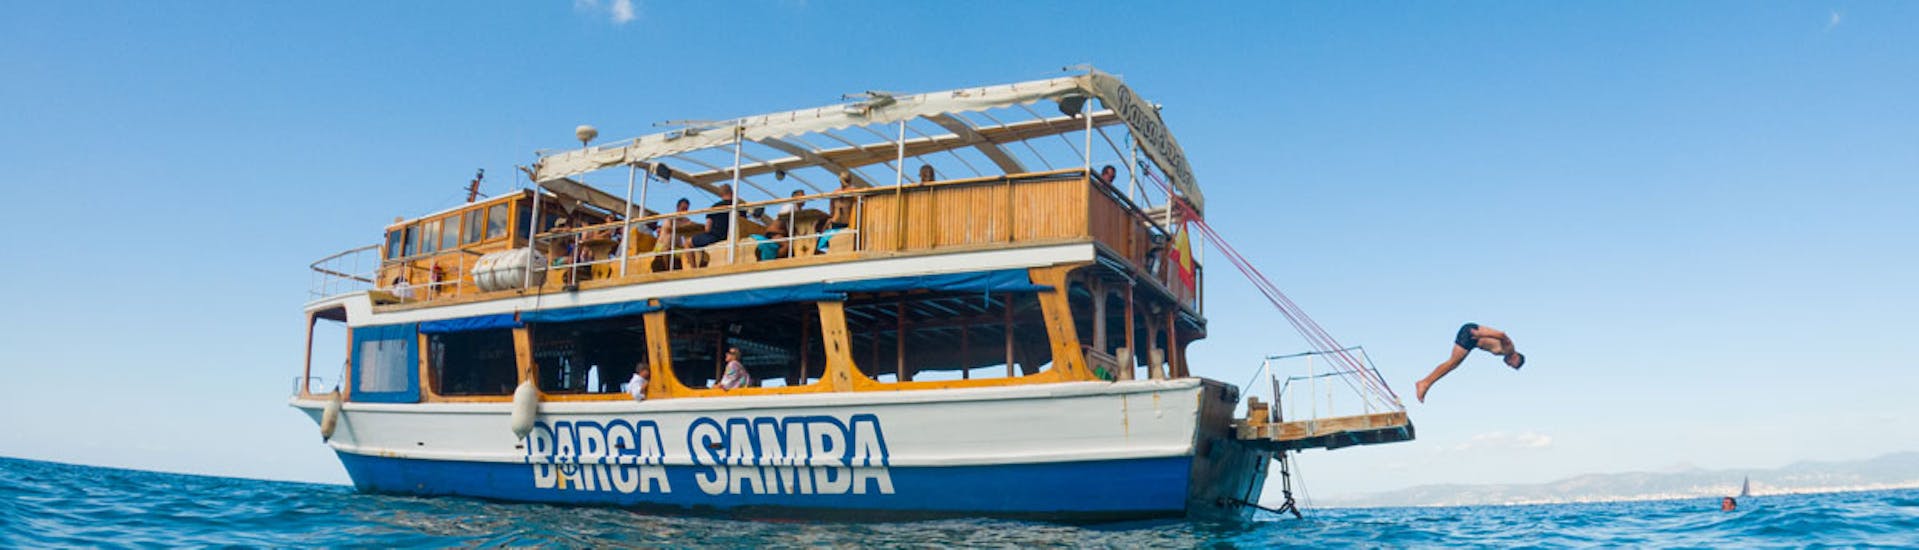 Una barca di Samba Boat che festeggia durante una gita in barca da Palma di Maiorca con DJ e pranzo incluso.